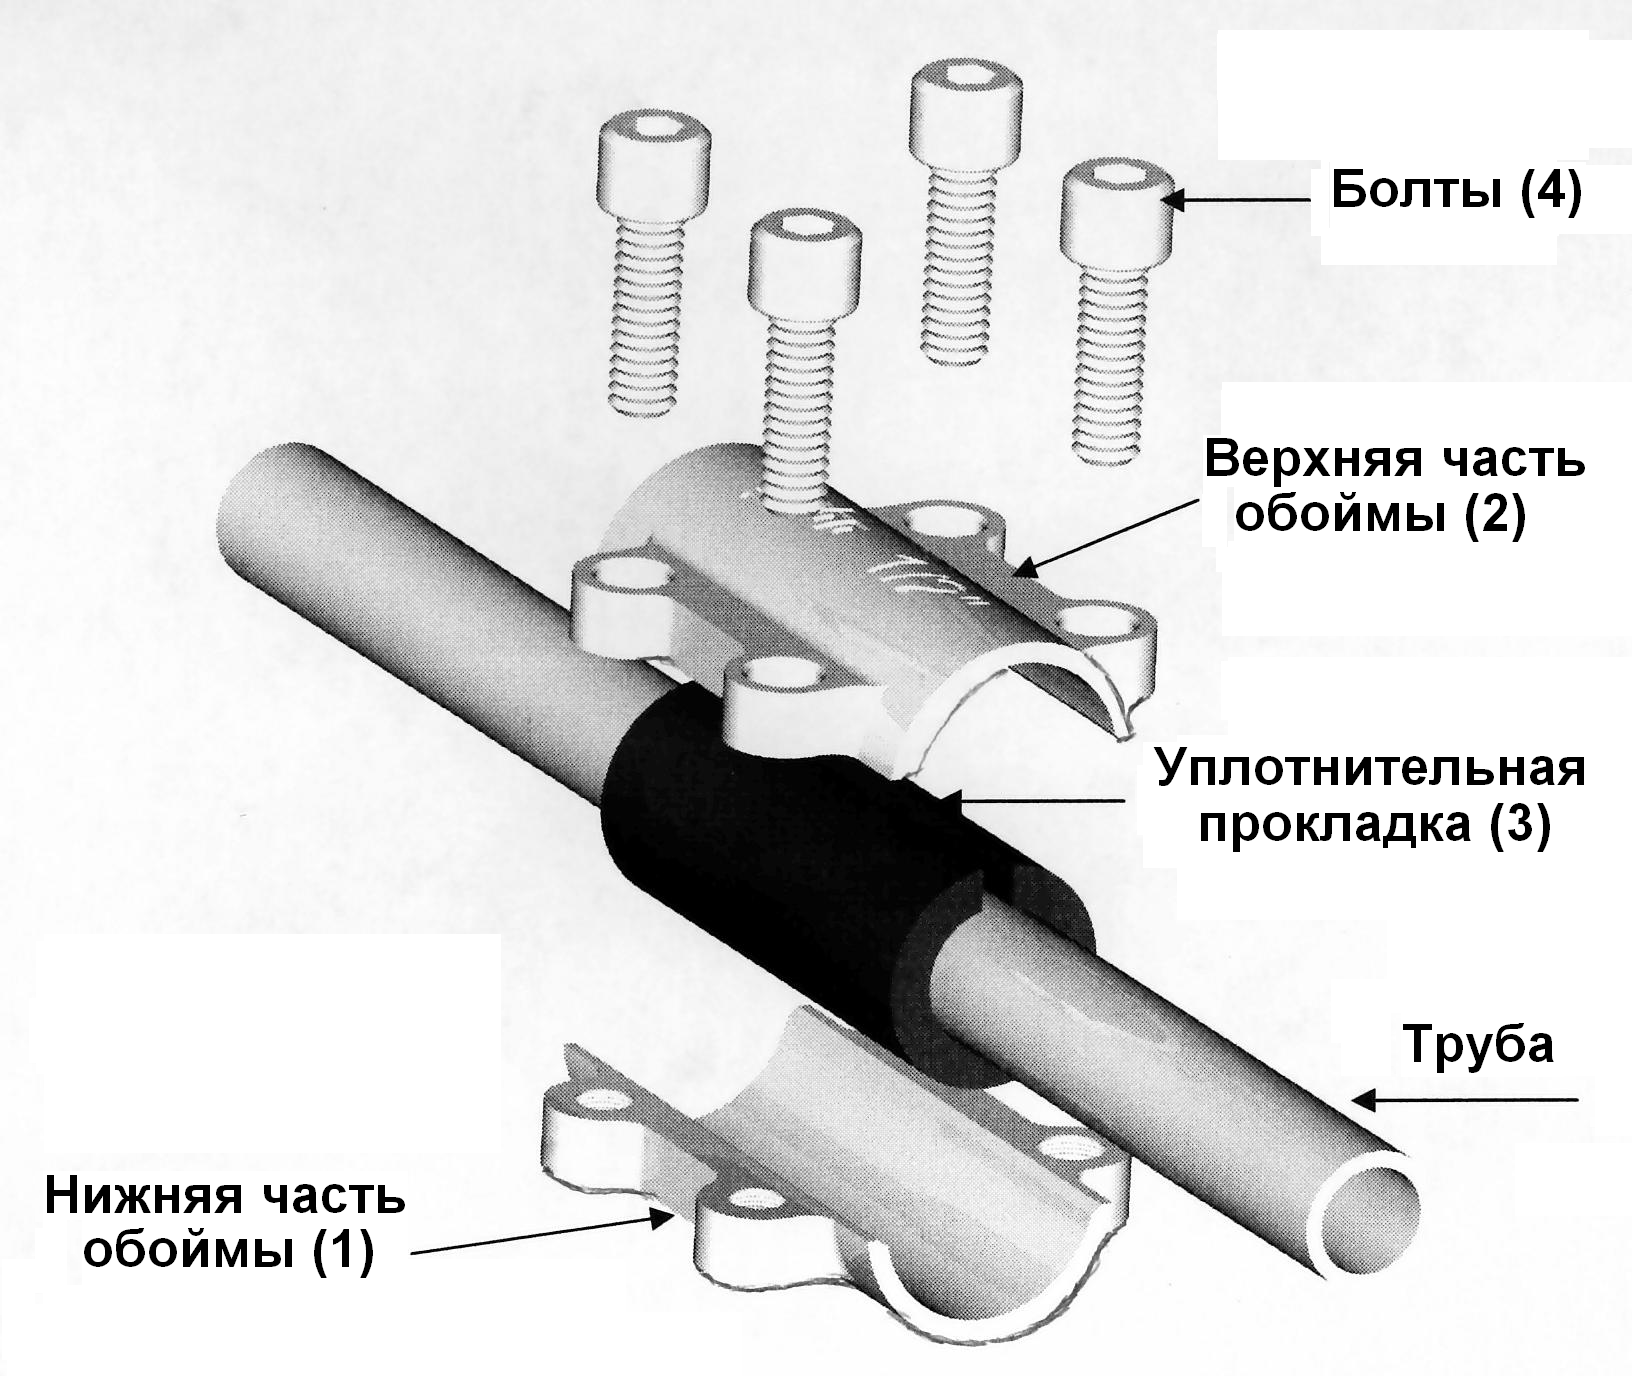 Материал для соединения труб. Обойма ремонтная Gebo DSK 1/2". Соединение металлических труб без сварки и резьбы. Ремонтная муфта для полипропиленовых труб 1/2. Схема соединения стальных труб на резьбе.